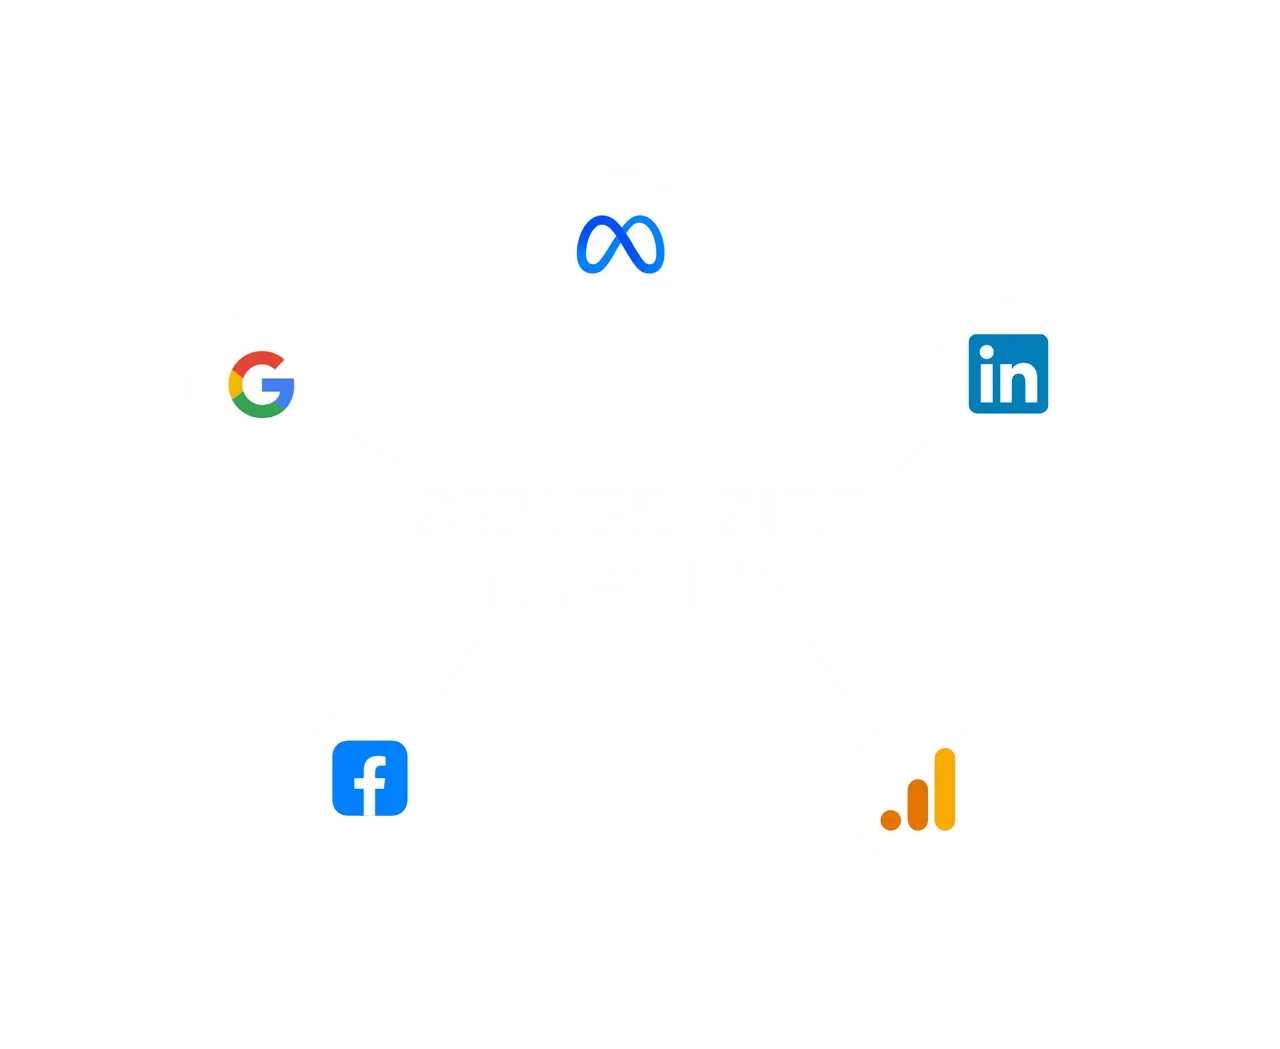 Server-side tagging